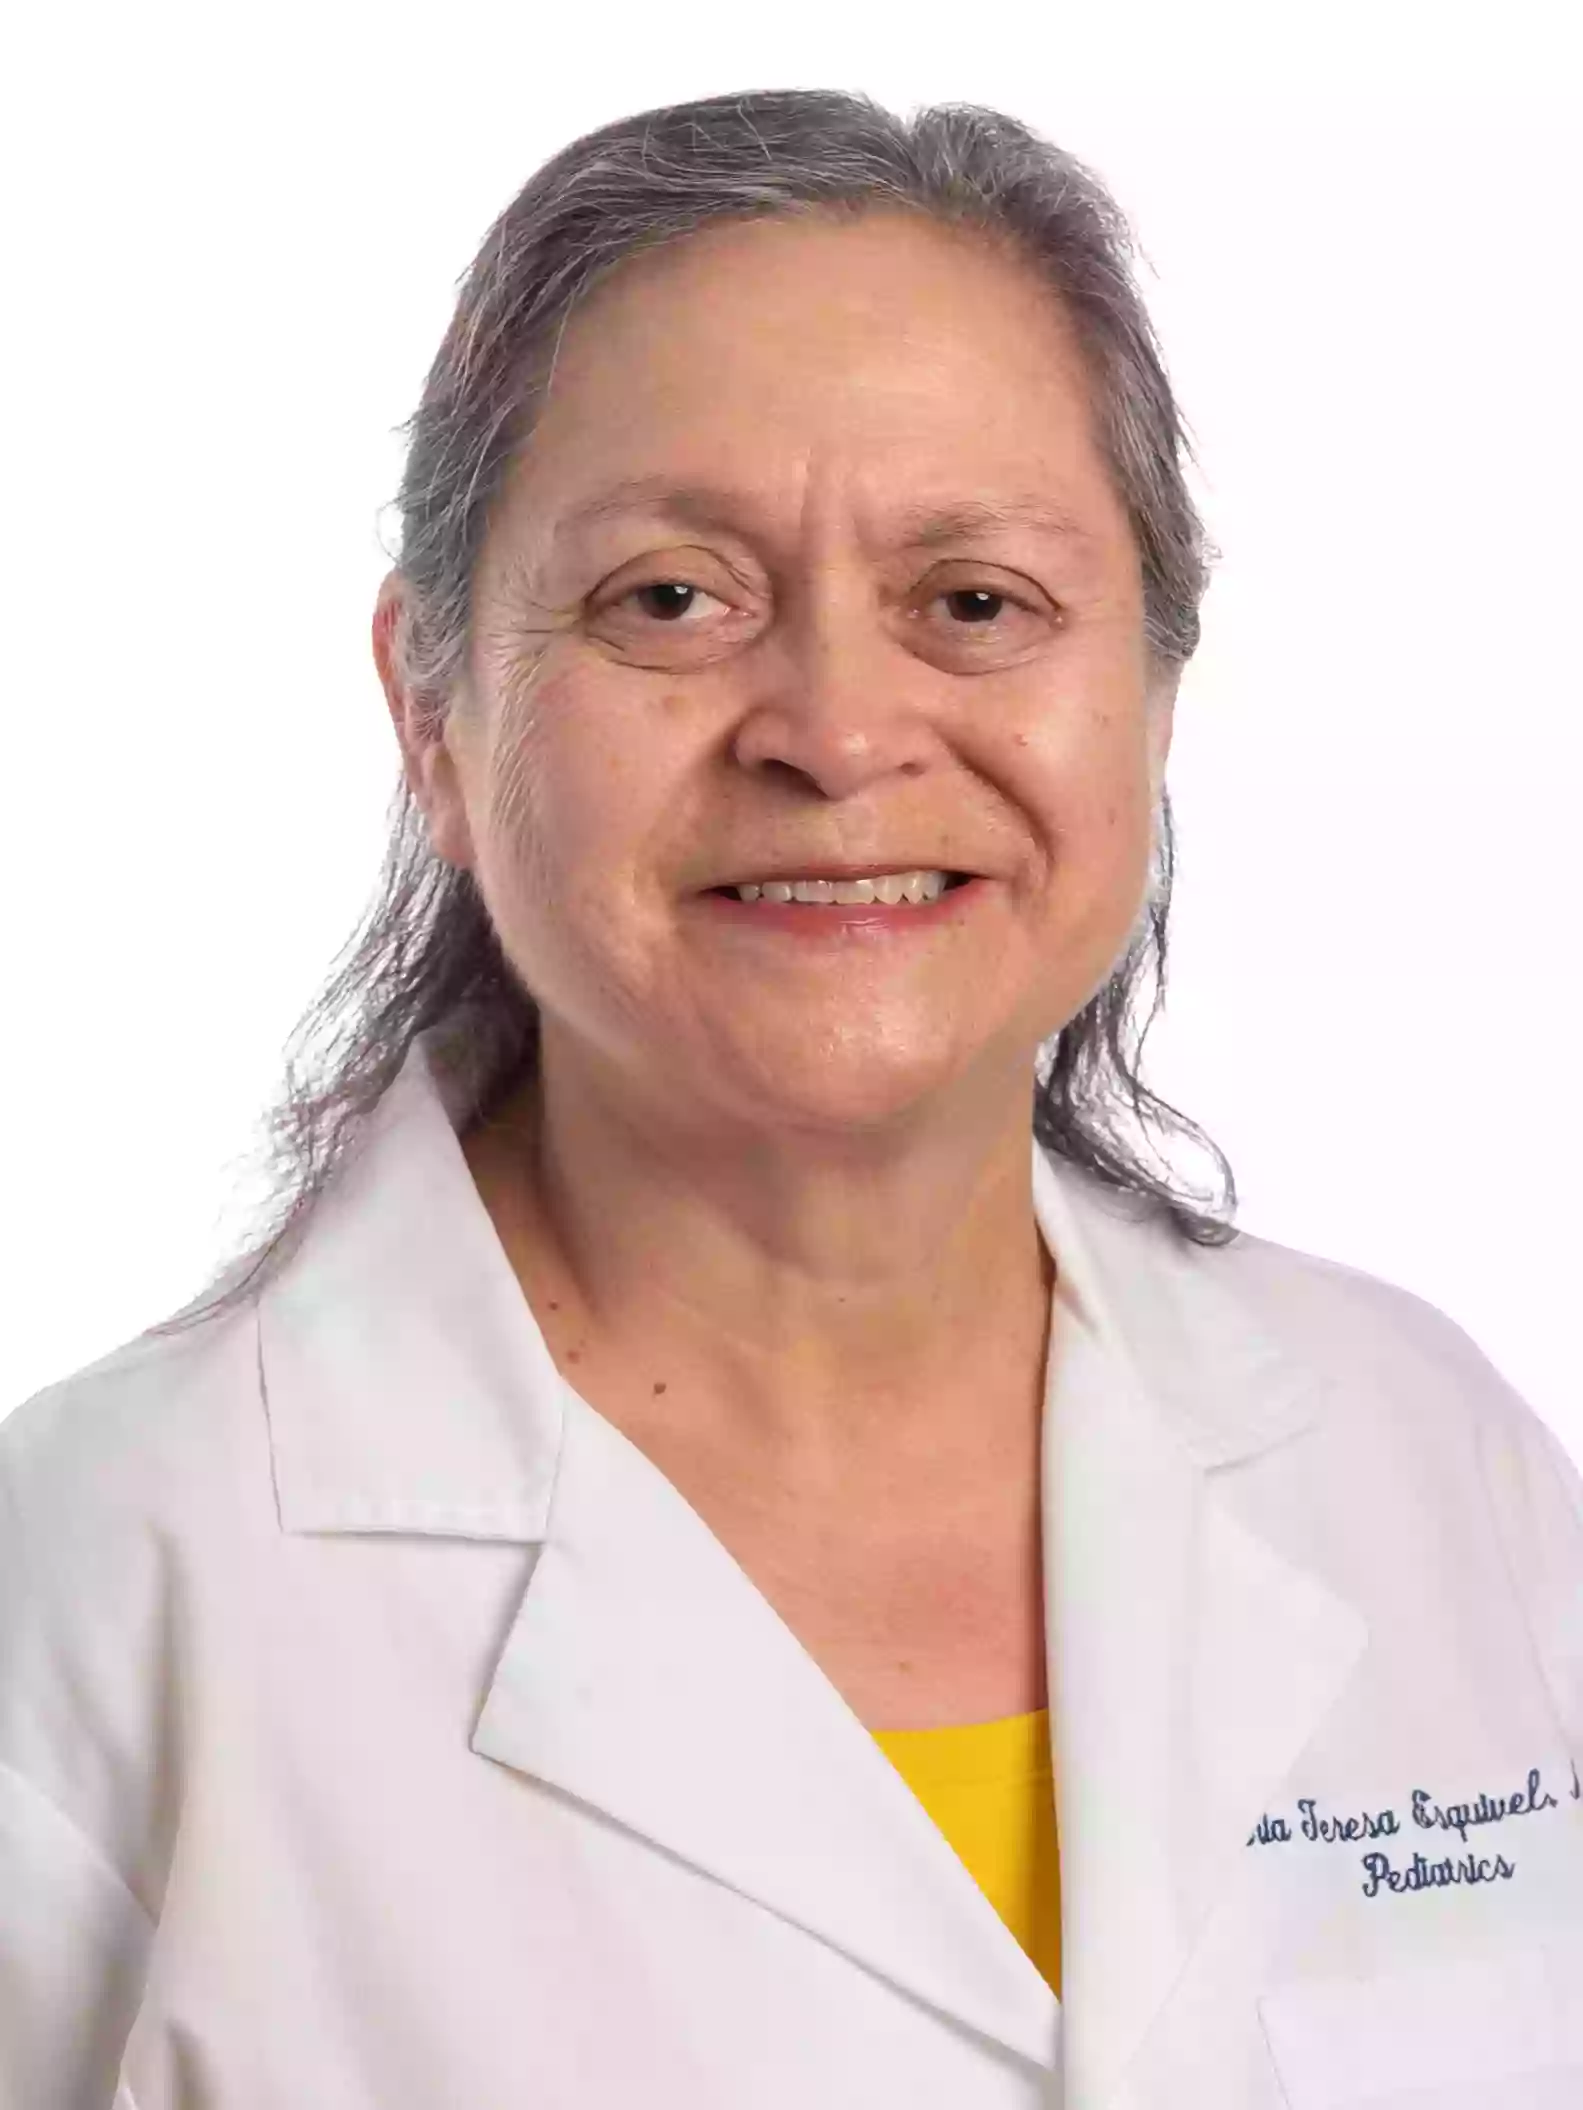 UAMS Health - Maria T. Esquivel, M.D.